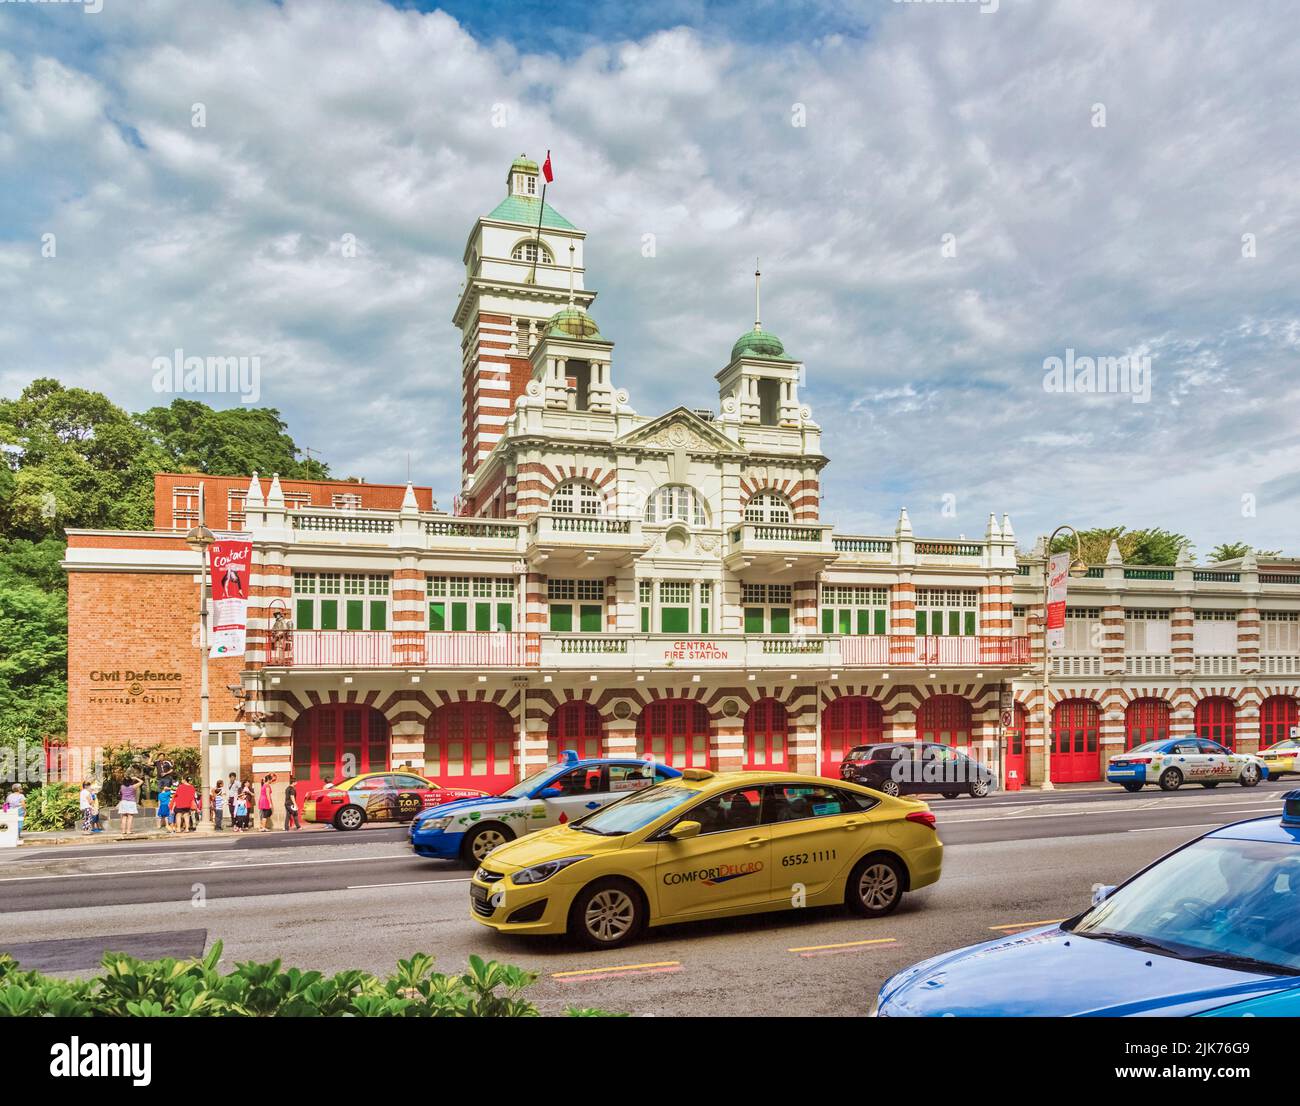 Centrale incendie également connue sous le nom de Hill Street Fire Station, République de Singapour. Le bâtiment, qui date de 1909, est un monument national. Banque D'Images